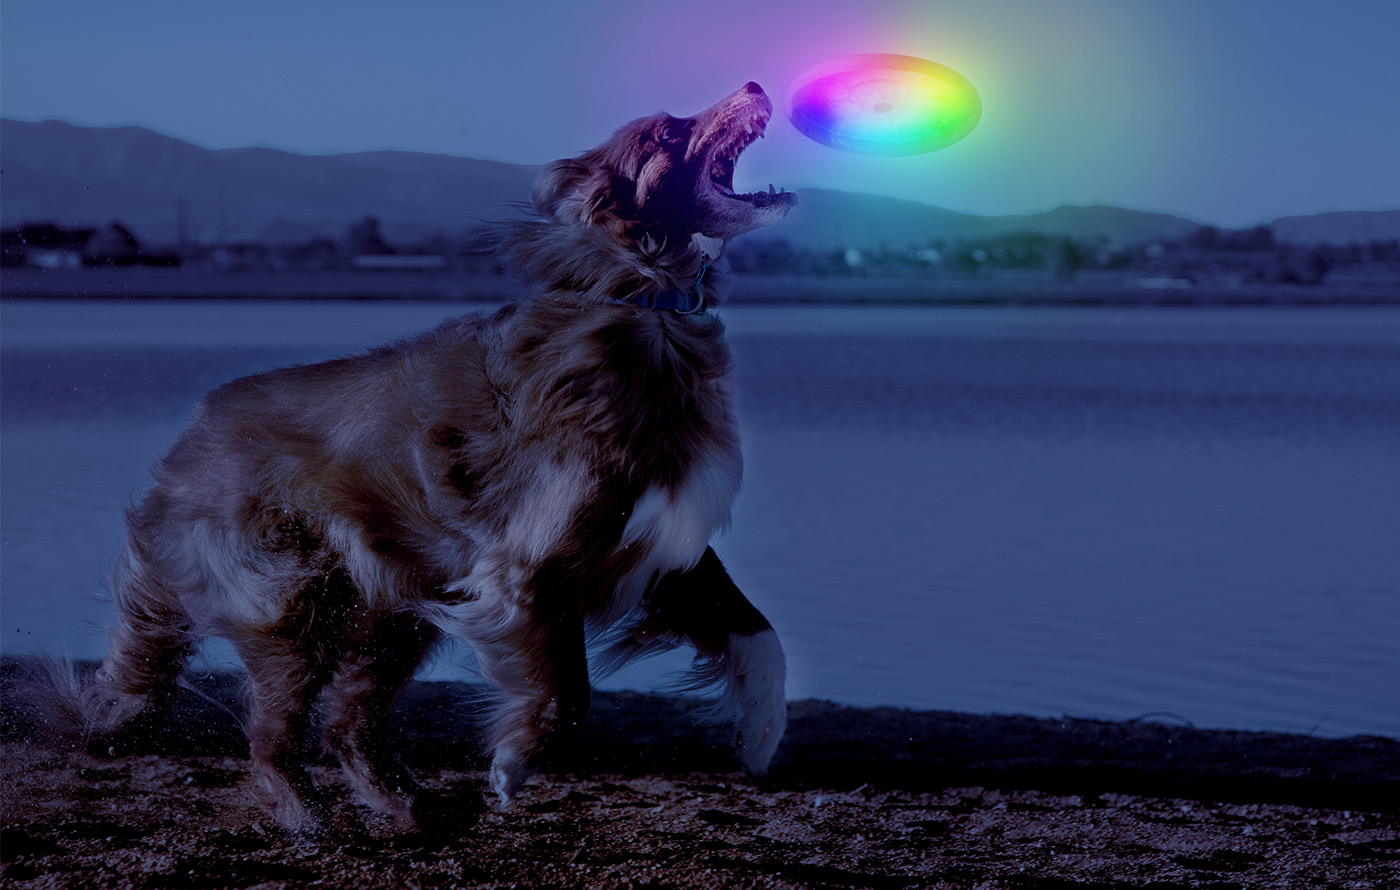 Nite Ize Flashflight Dog Discuit LED Flying Disc